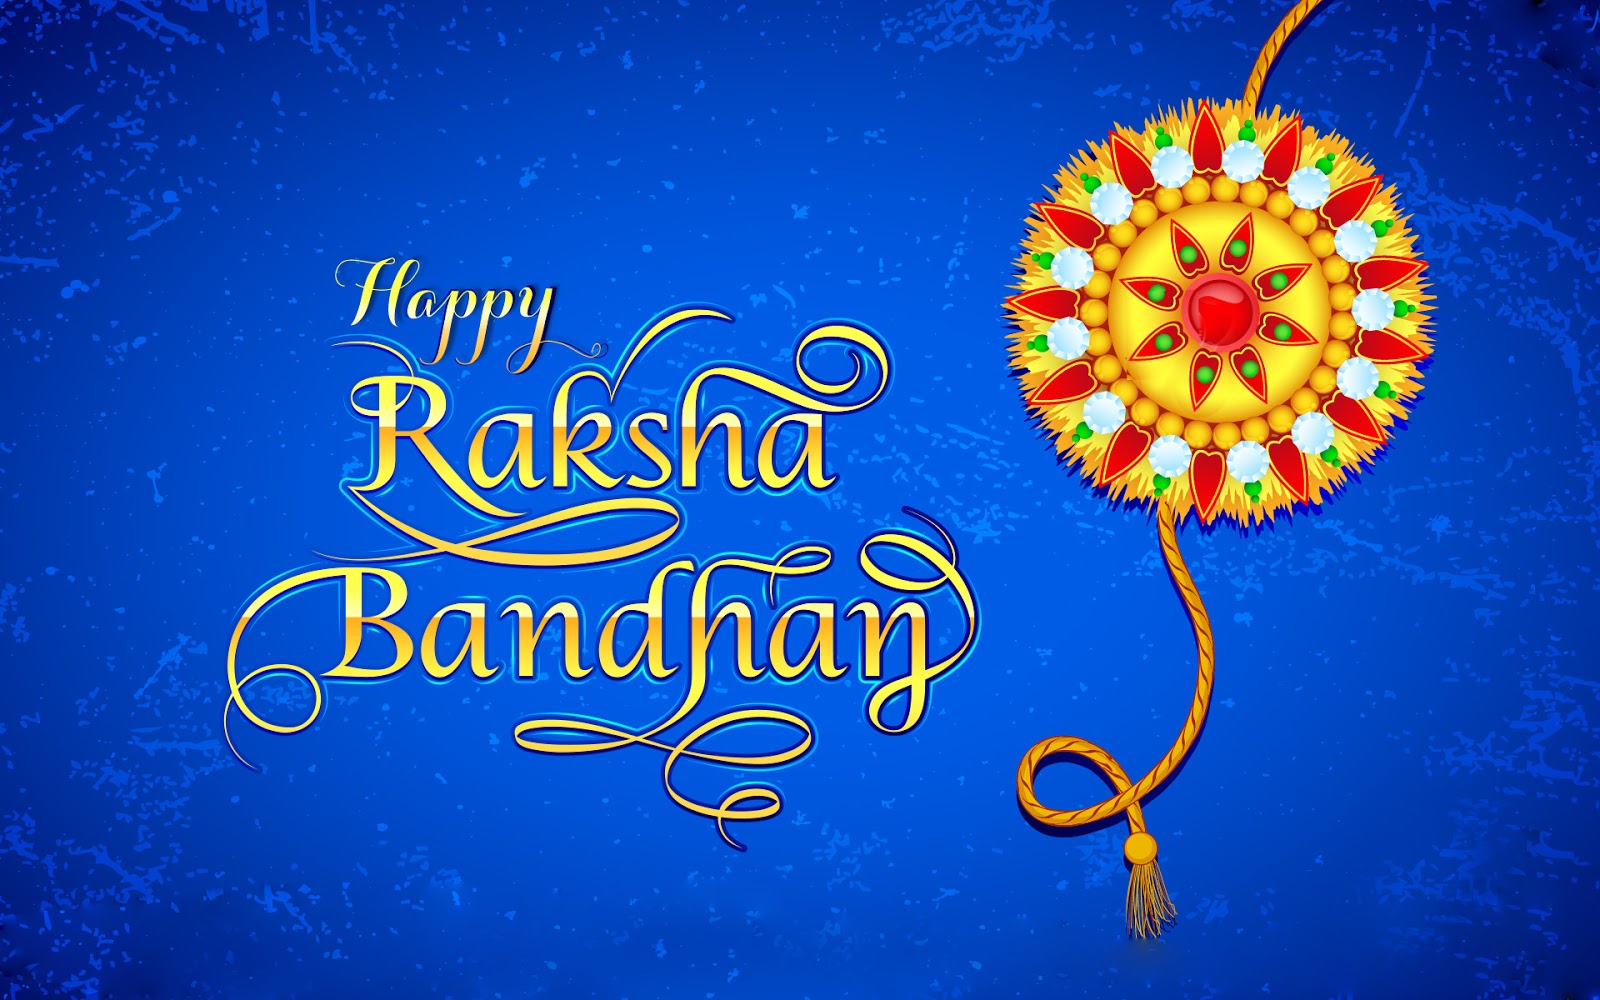 Most Beautiful Raksha Bandhan Image With Quotes Rakhi